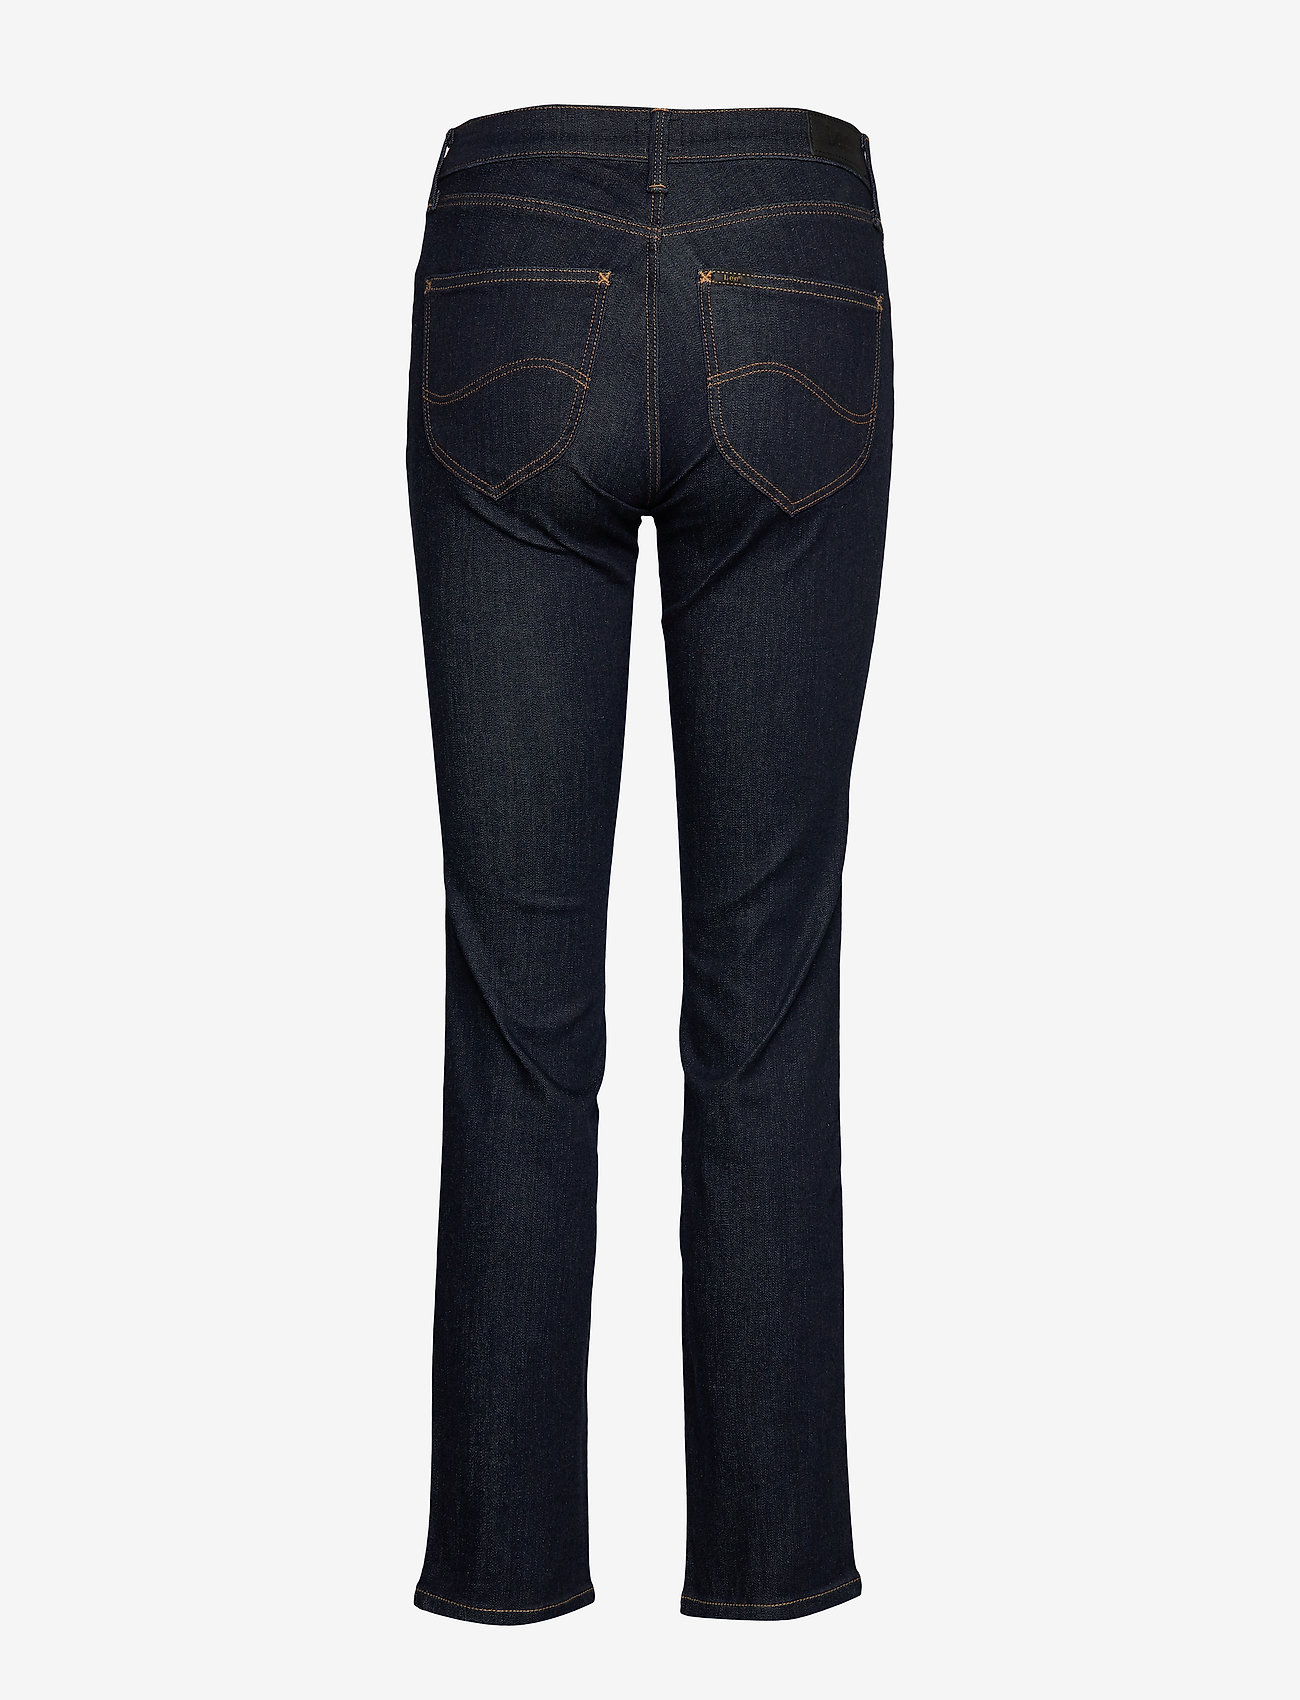 Lee Jeans - MARION STRAIGHT - sirge säärega teksad - rinse - 1